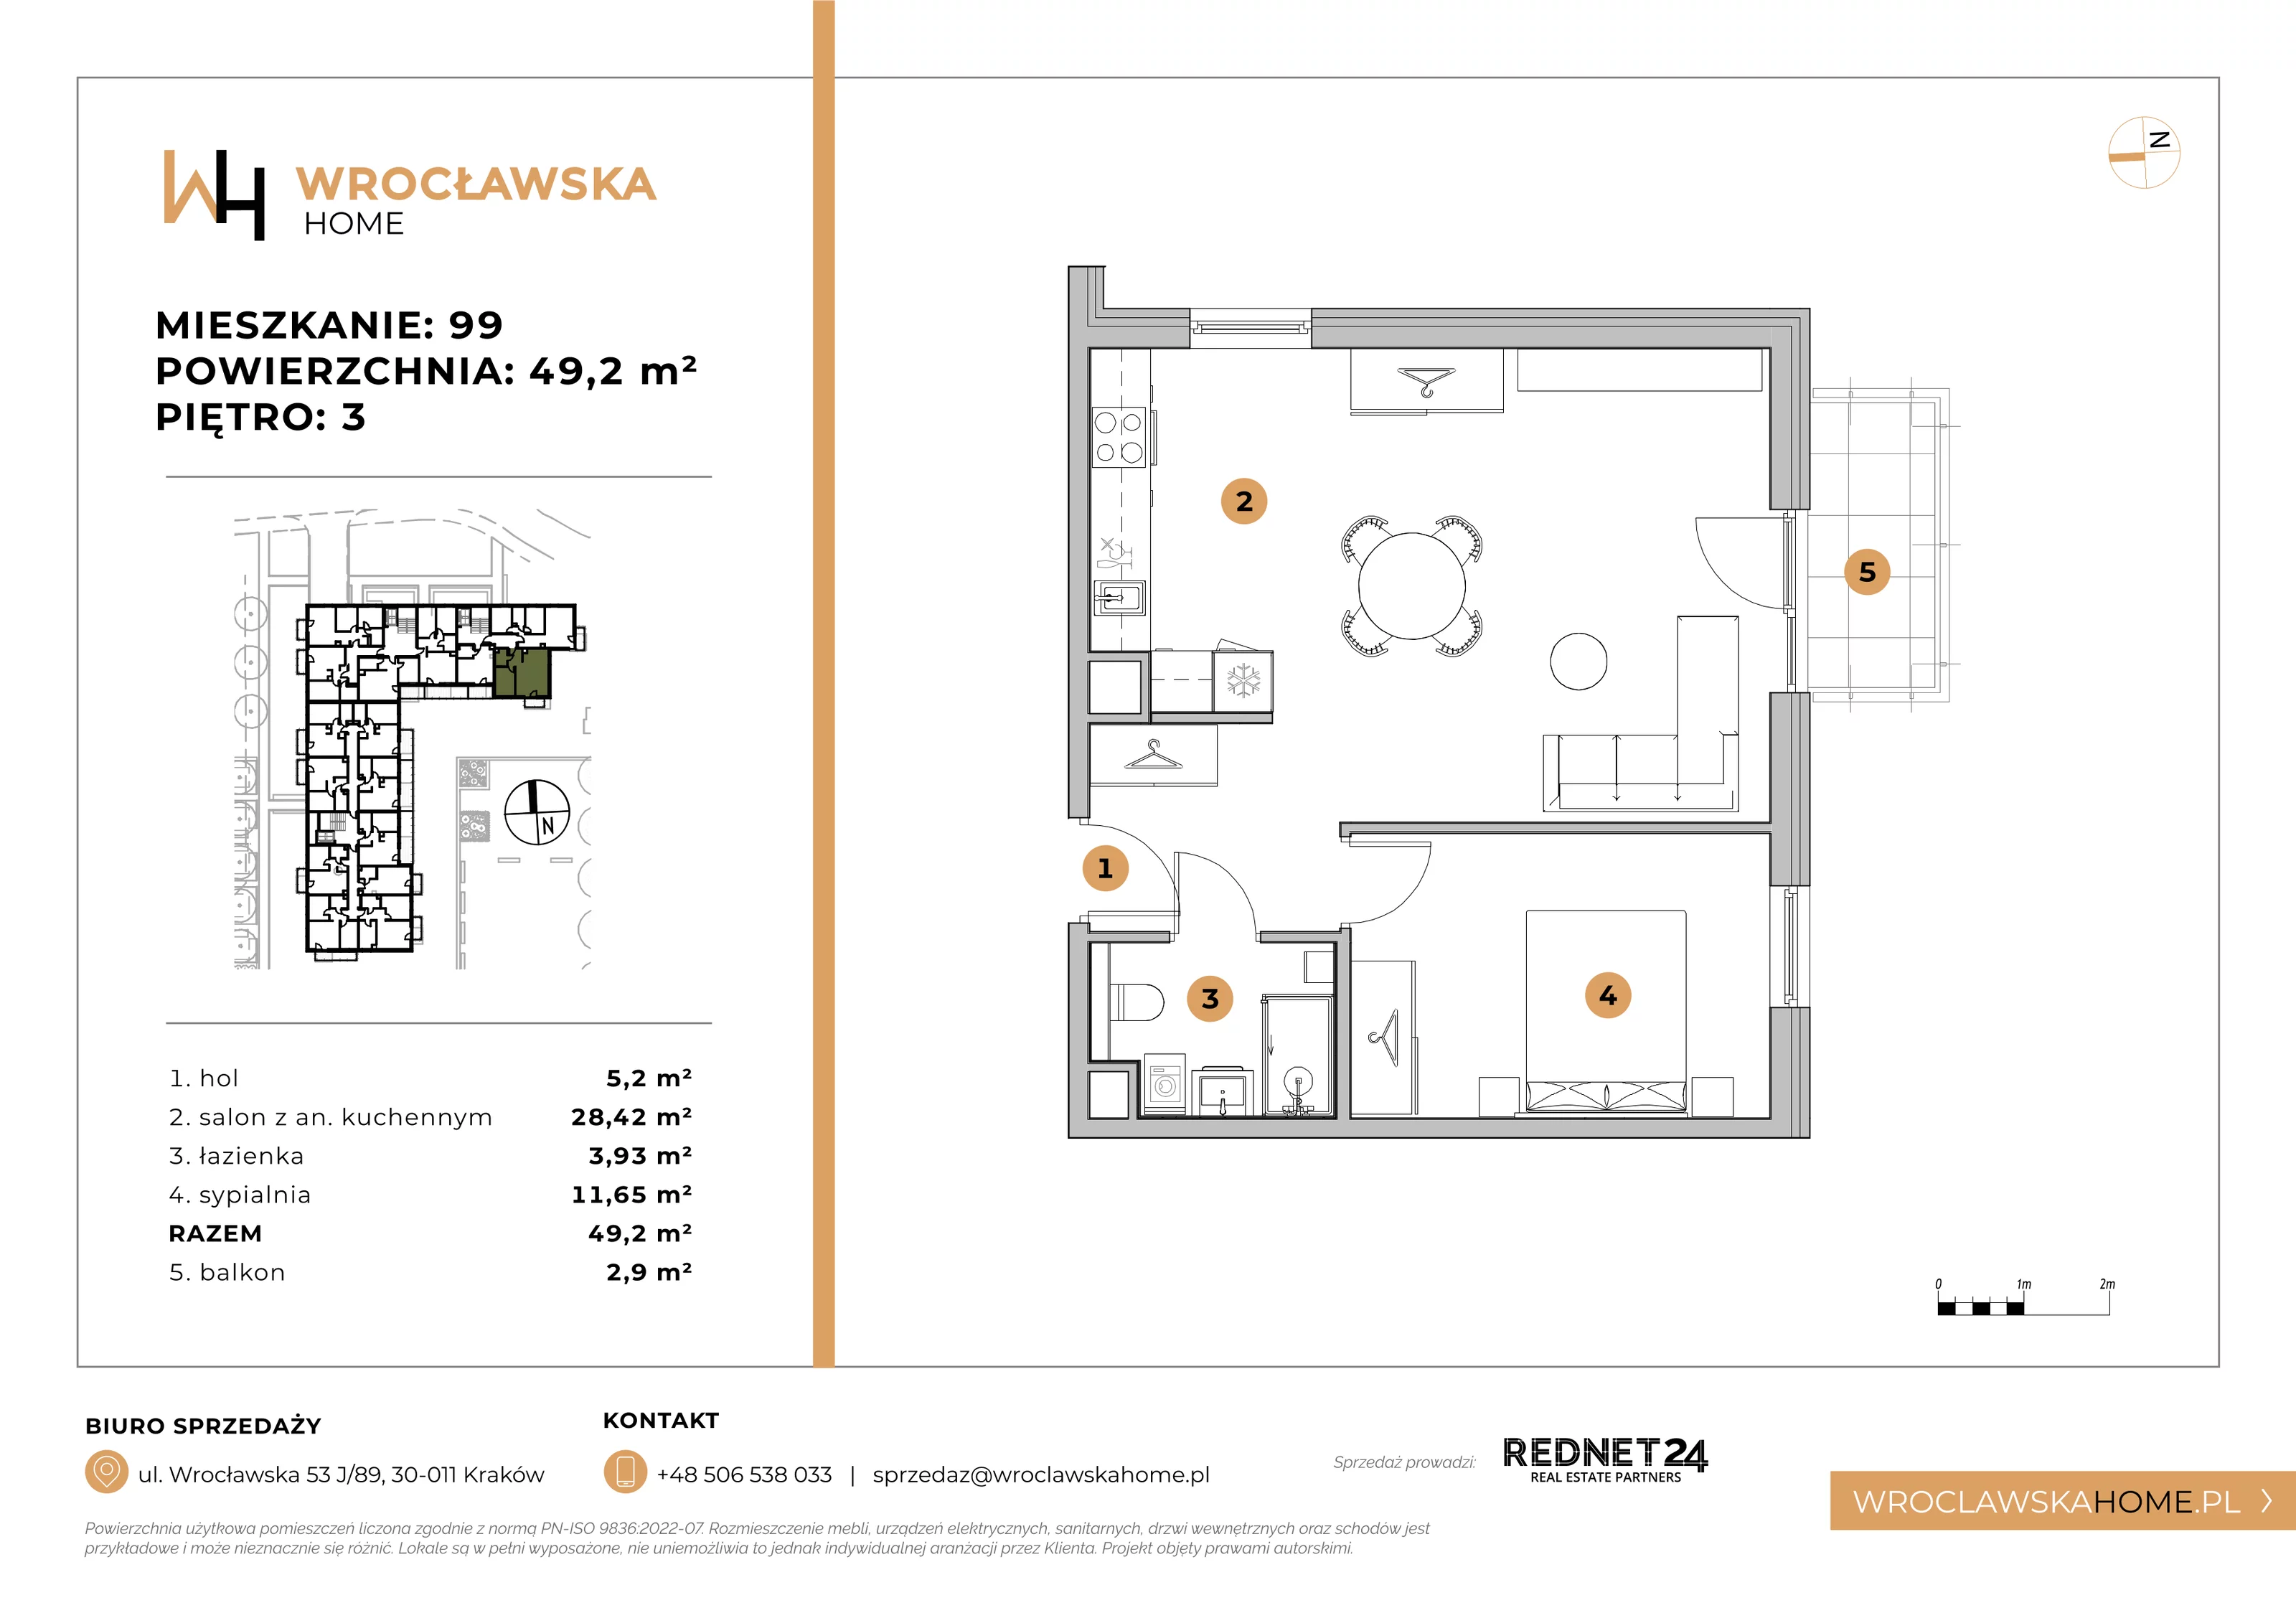 Mieszkanie 49,20 m², piętro 3, oferta nr 99, Wrocławska HOME, Kraków, Krowodrza, ul. Wrocławska 53J	